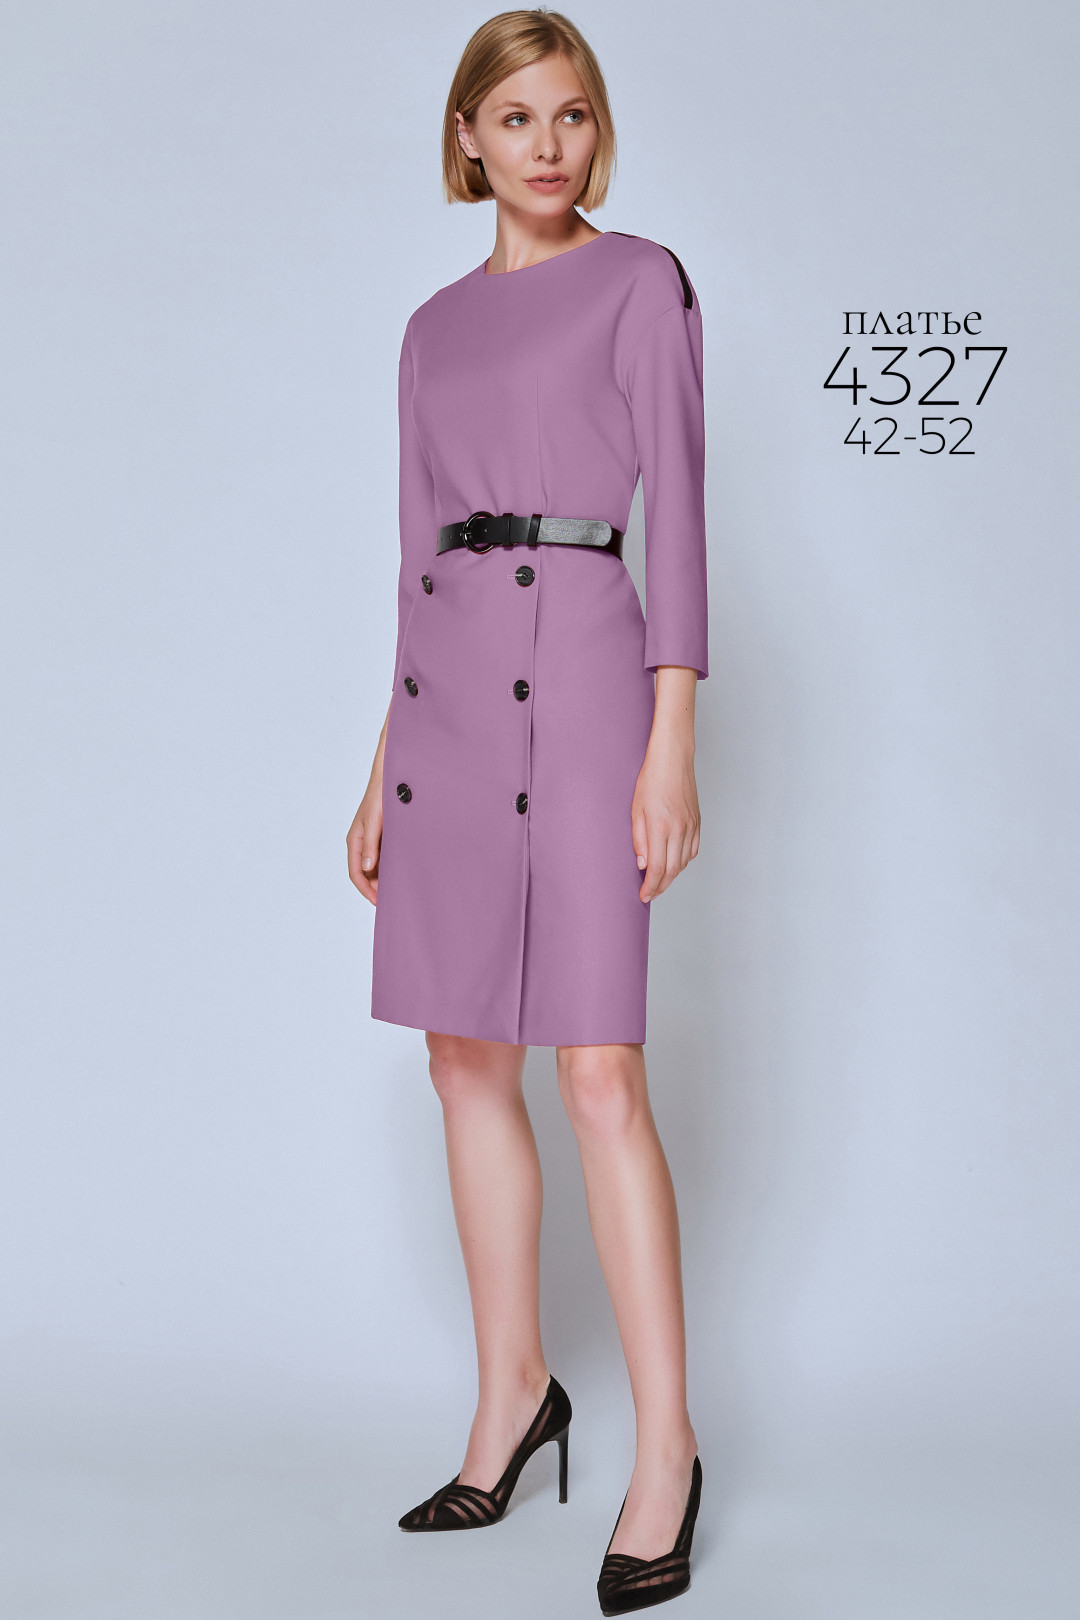 Платье Bazalini 4327 сиреневый